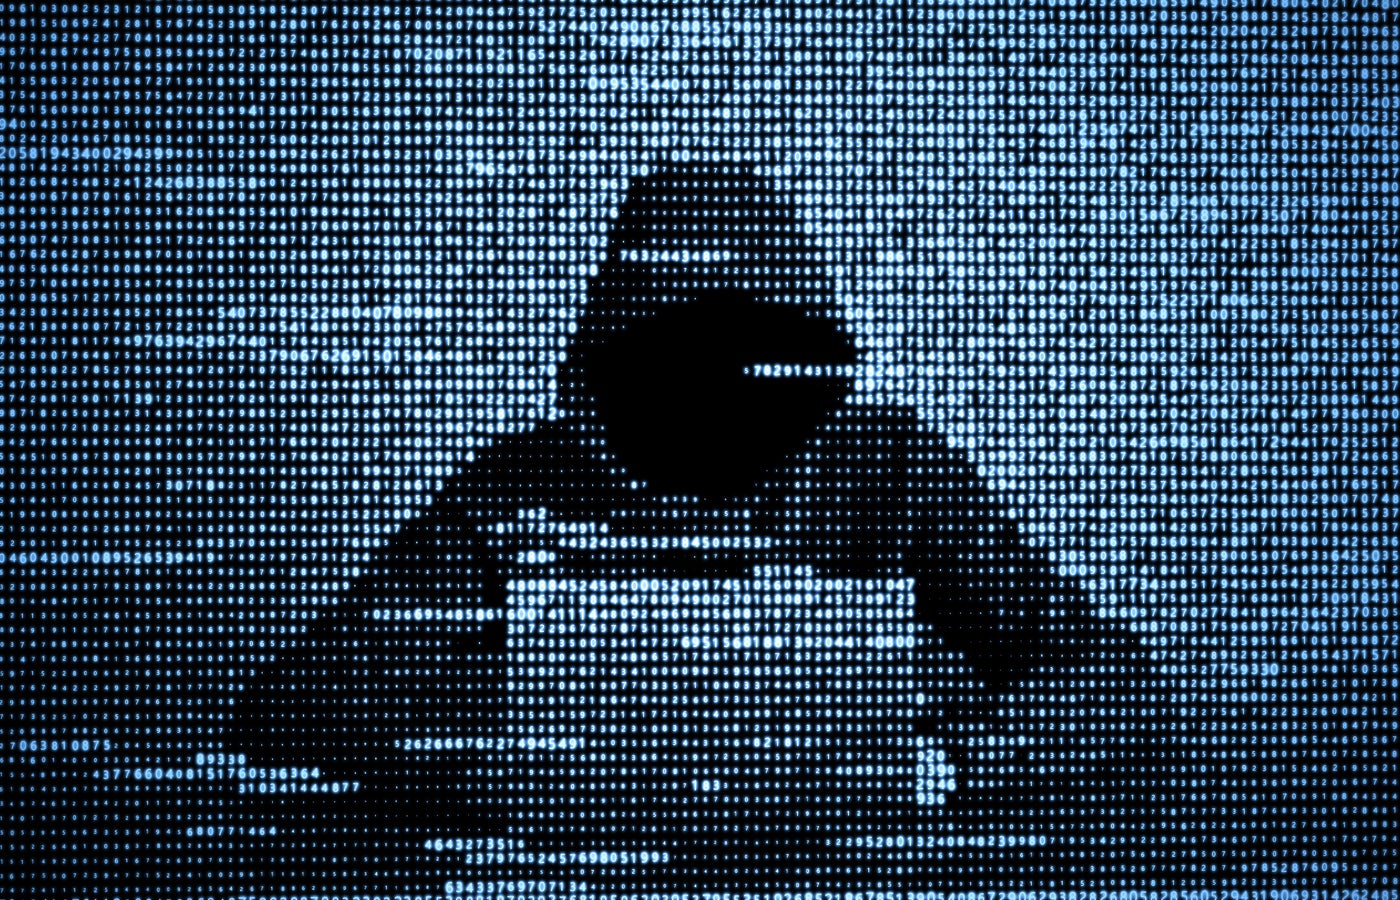 Los profesionales de la seguridad cibernética deberían preocuparse por los ataques cibernéticos patrocinados por el estado